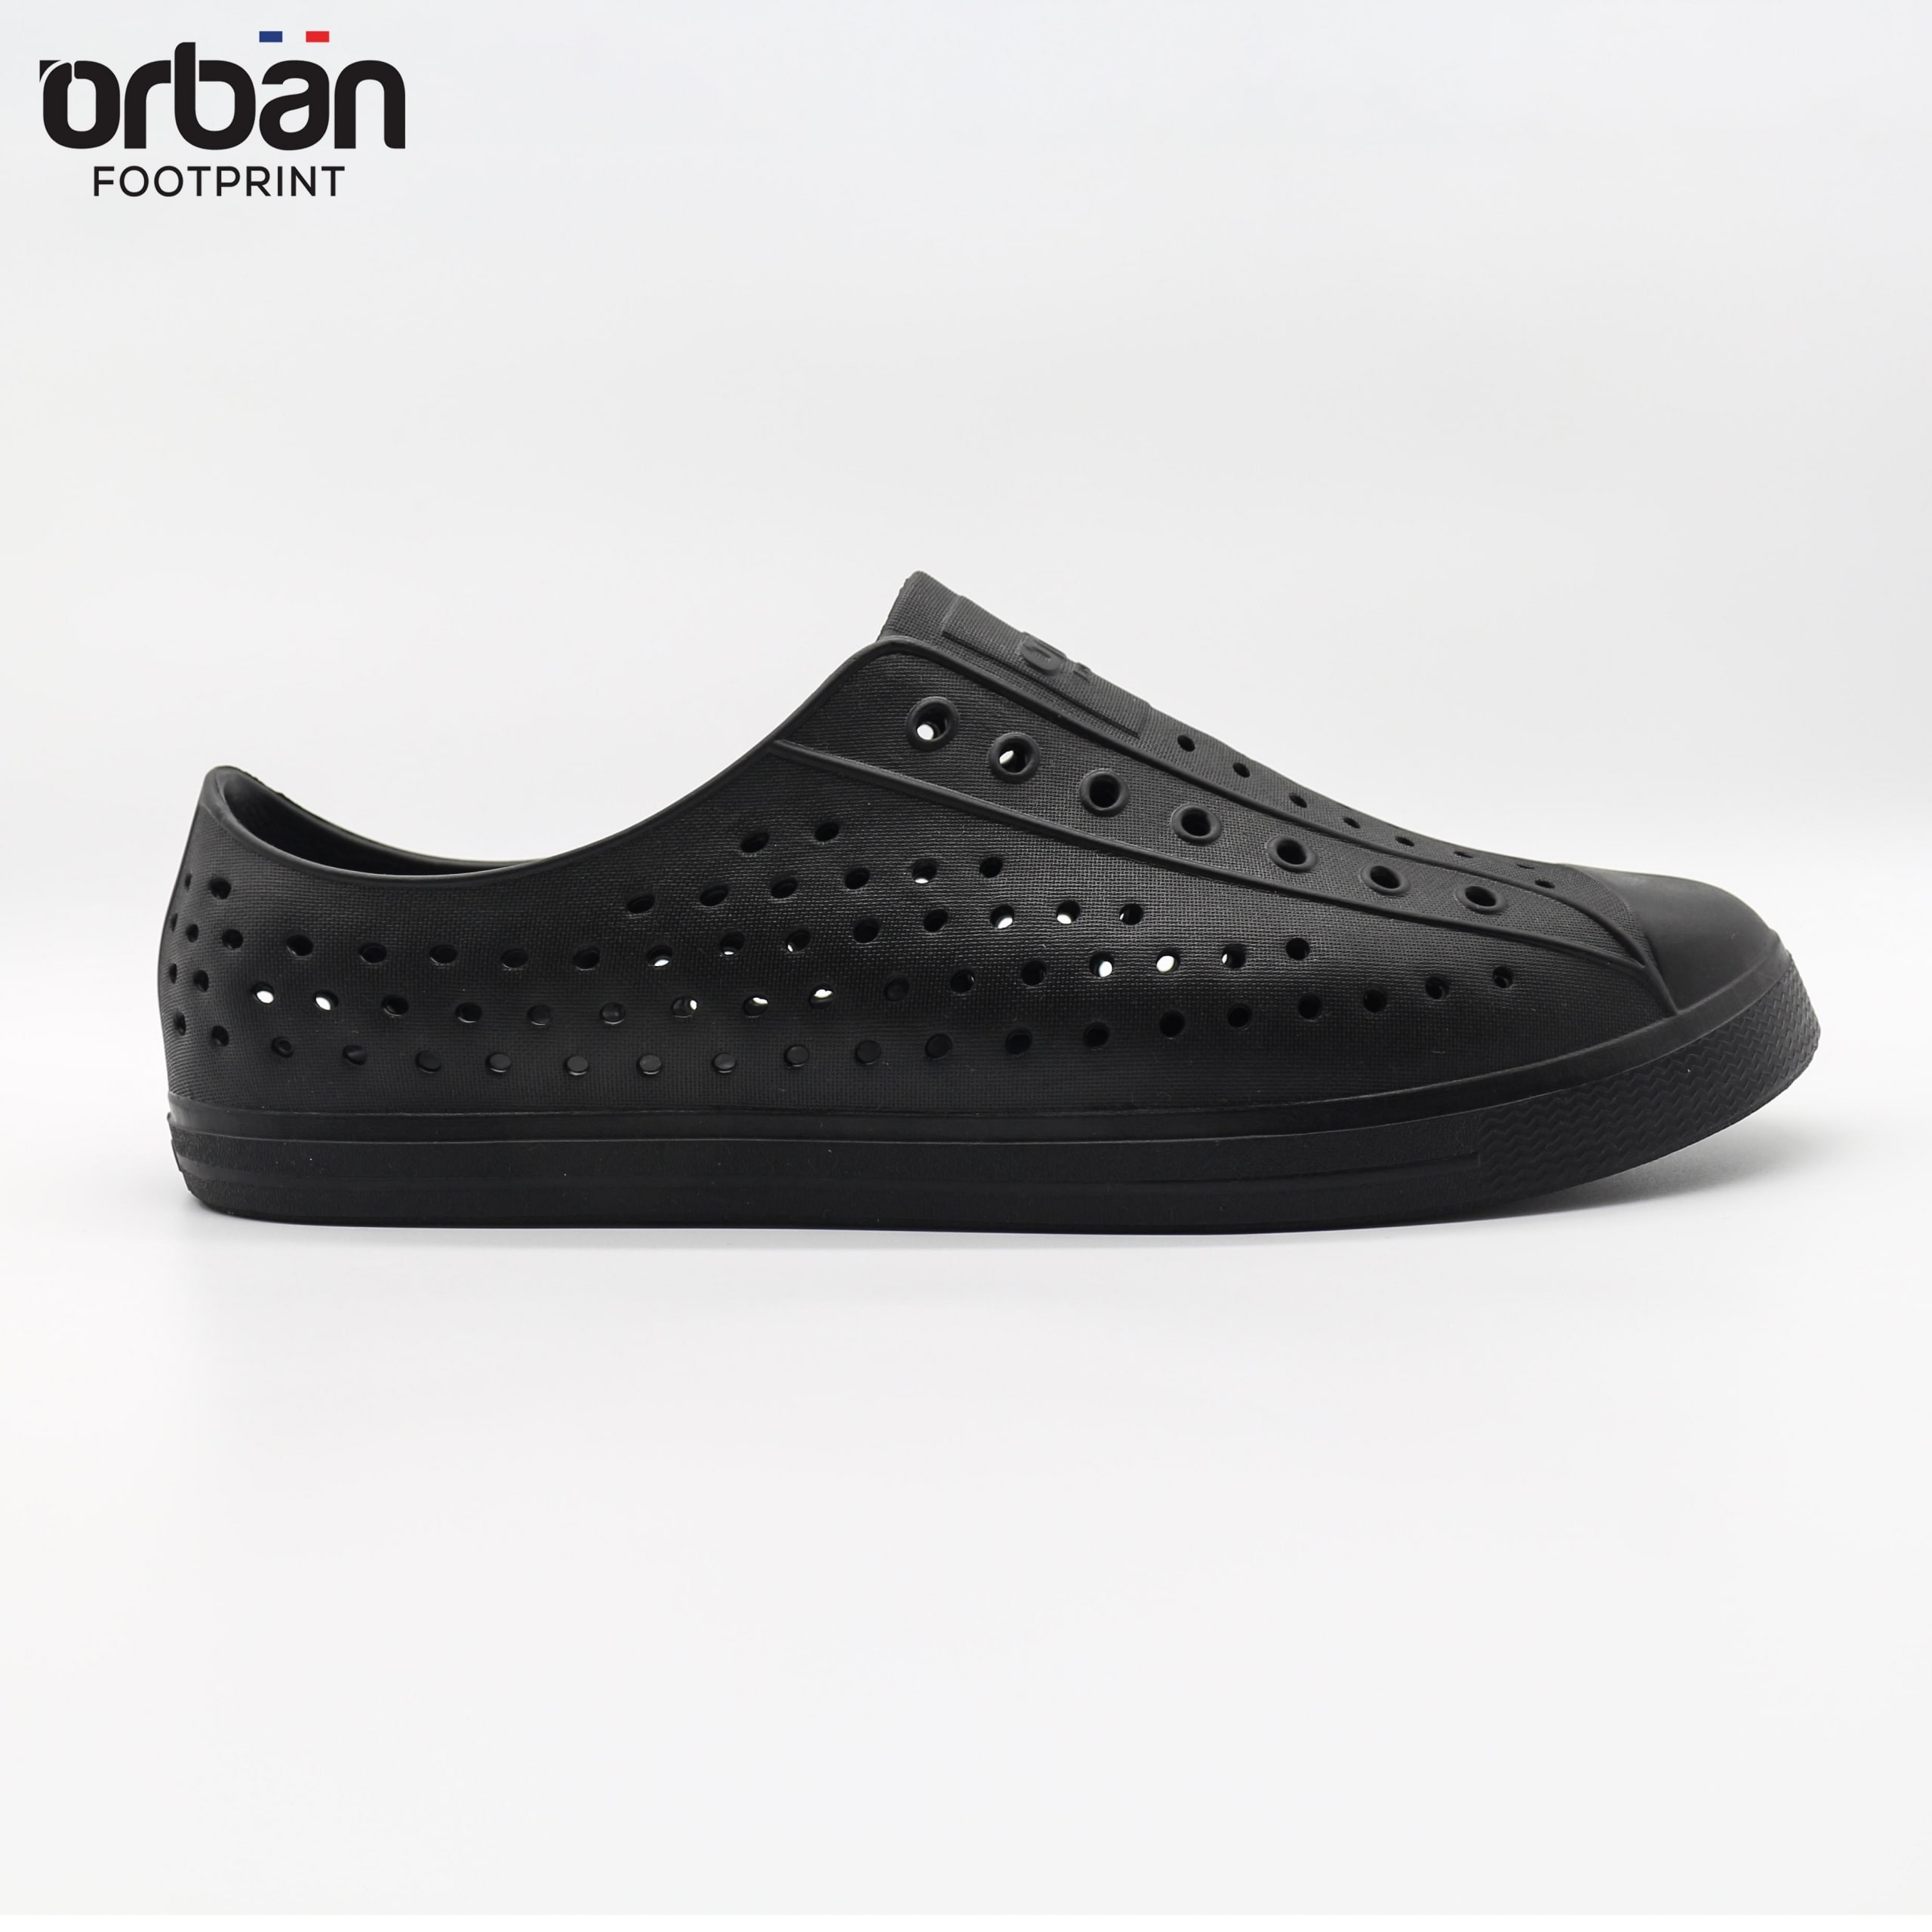 [Urban] Giày nhựa lỗ nam nữ đi mưa đi biển Urban - Chất liệu Eva siêu nhẹ, chống nước, giá tốt - Màu Đen trơn